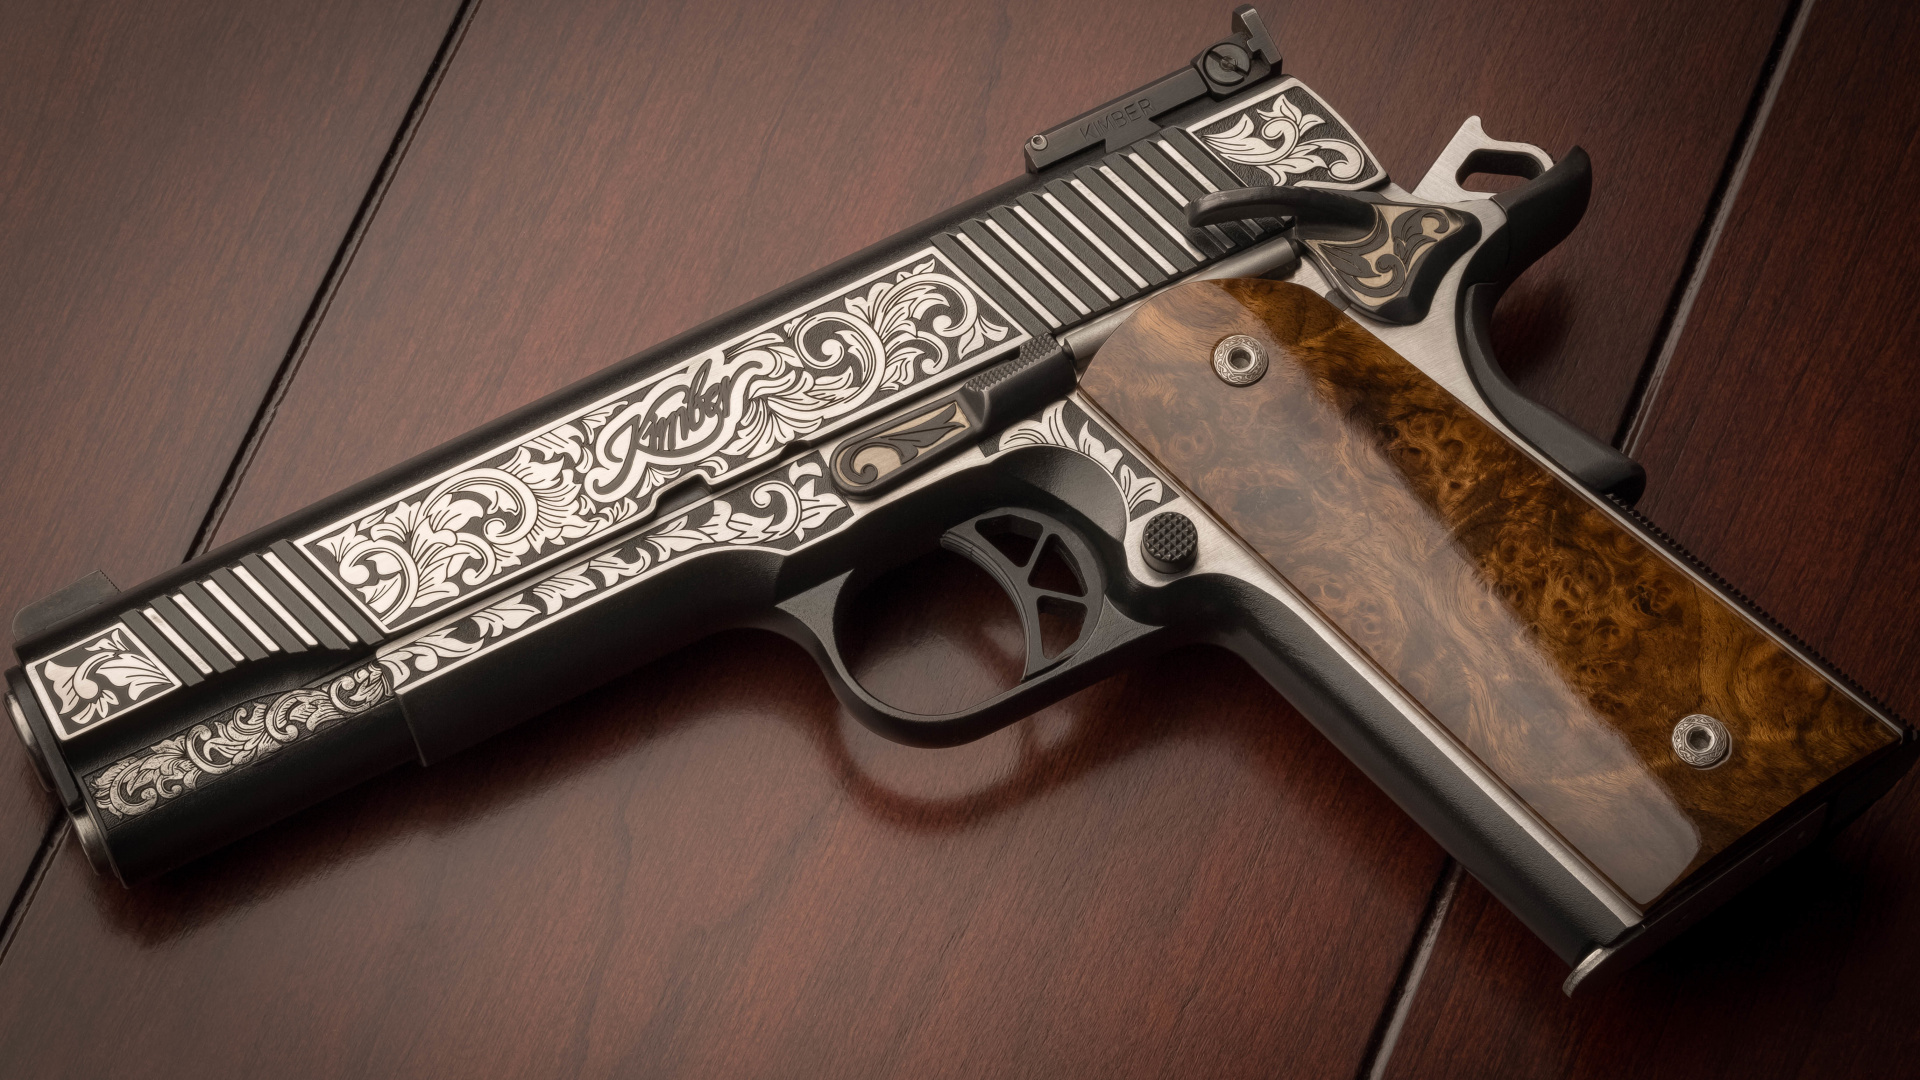 M1911 Pistole, Feuerwaffe, Trigger, Gun Barrel, Pistole Zubehör. Wallpaper in 1920x1080 Resolution